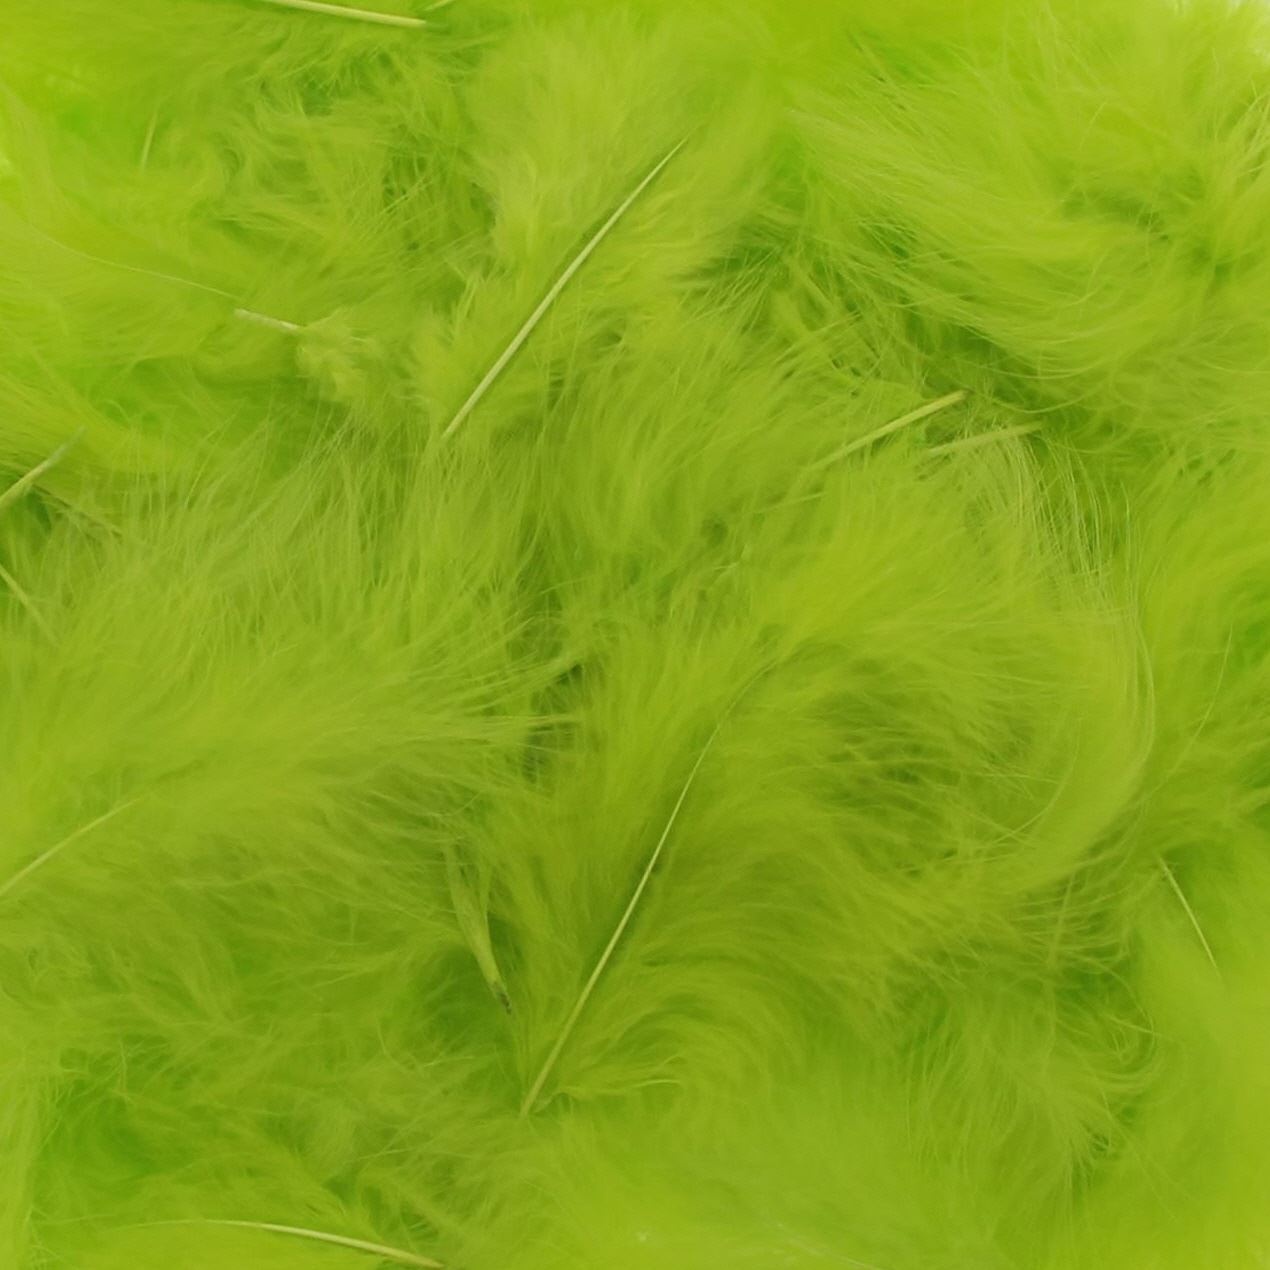 Federn Leichtgrün – etwa 400 Stück pro Beutel